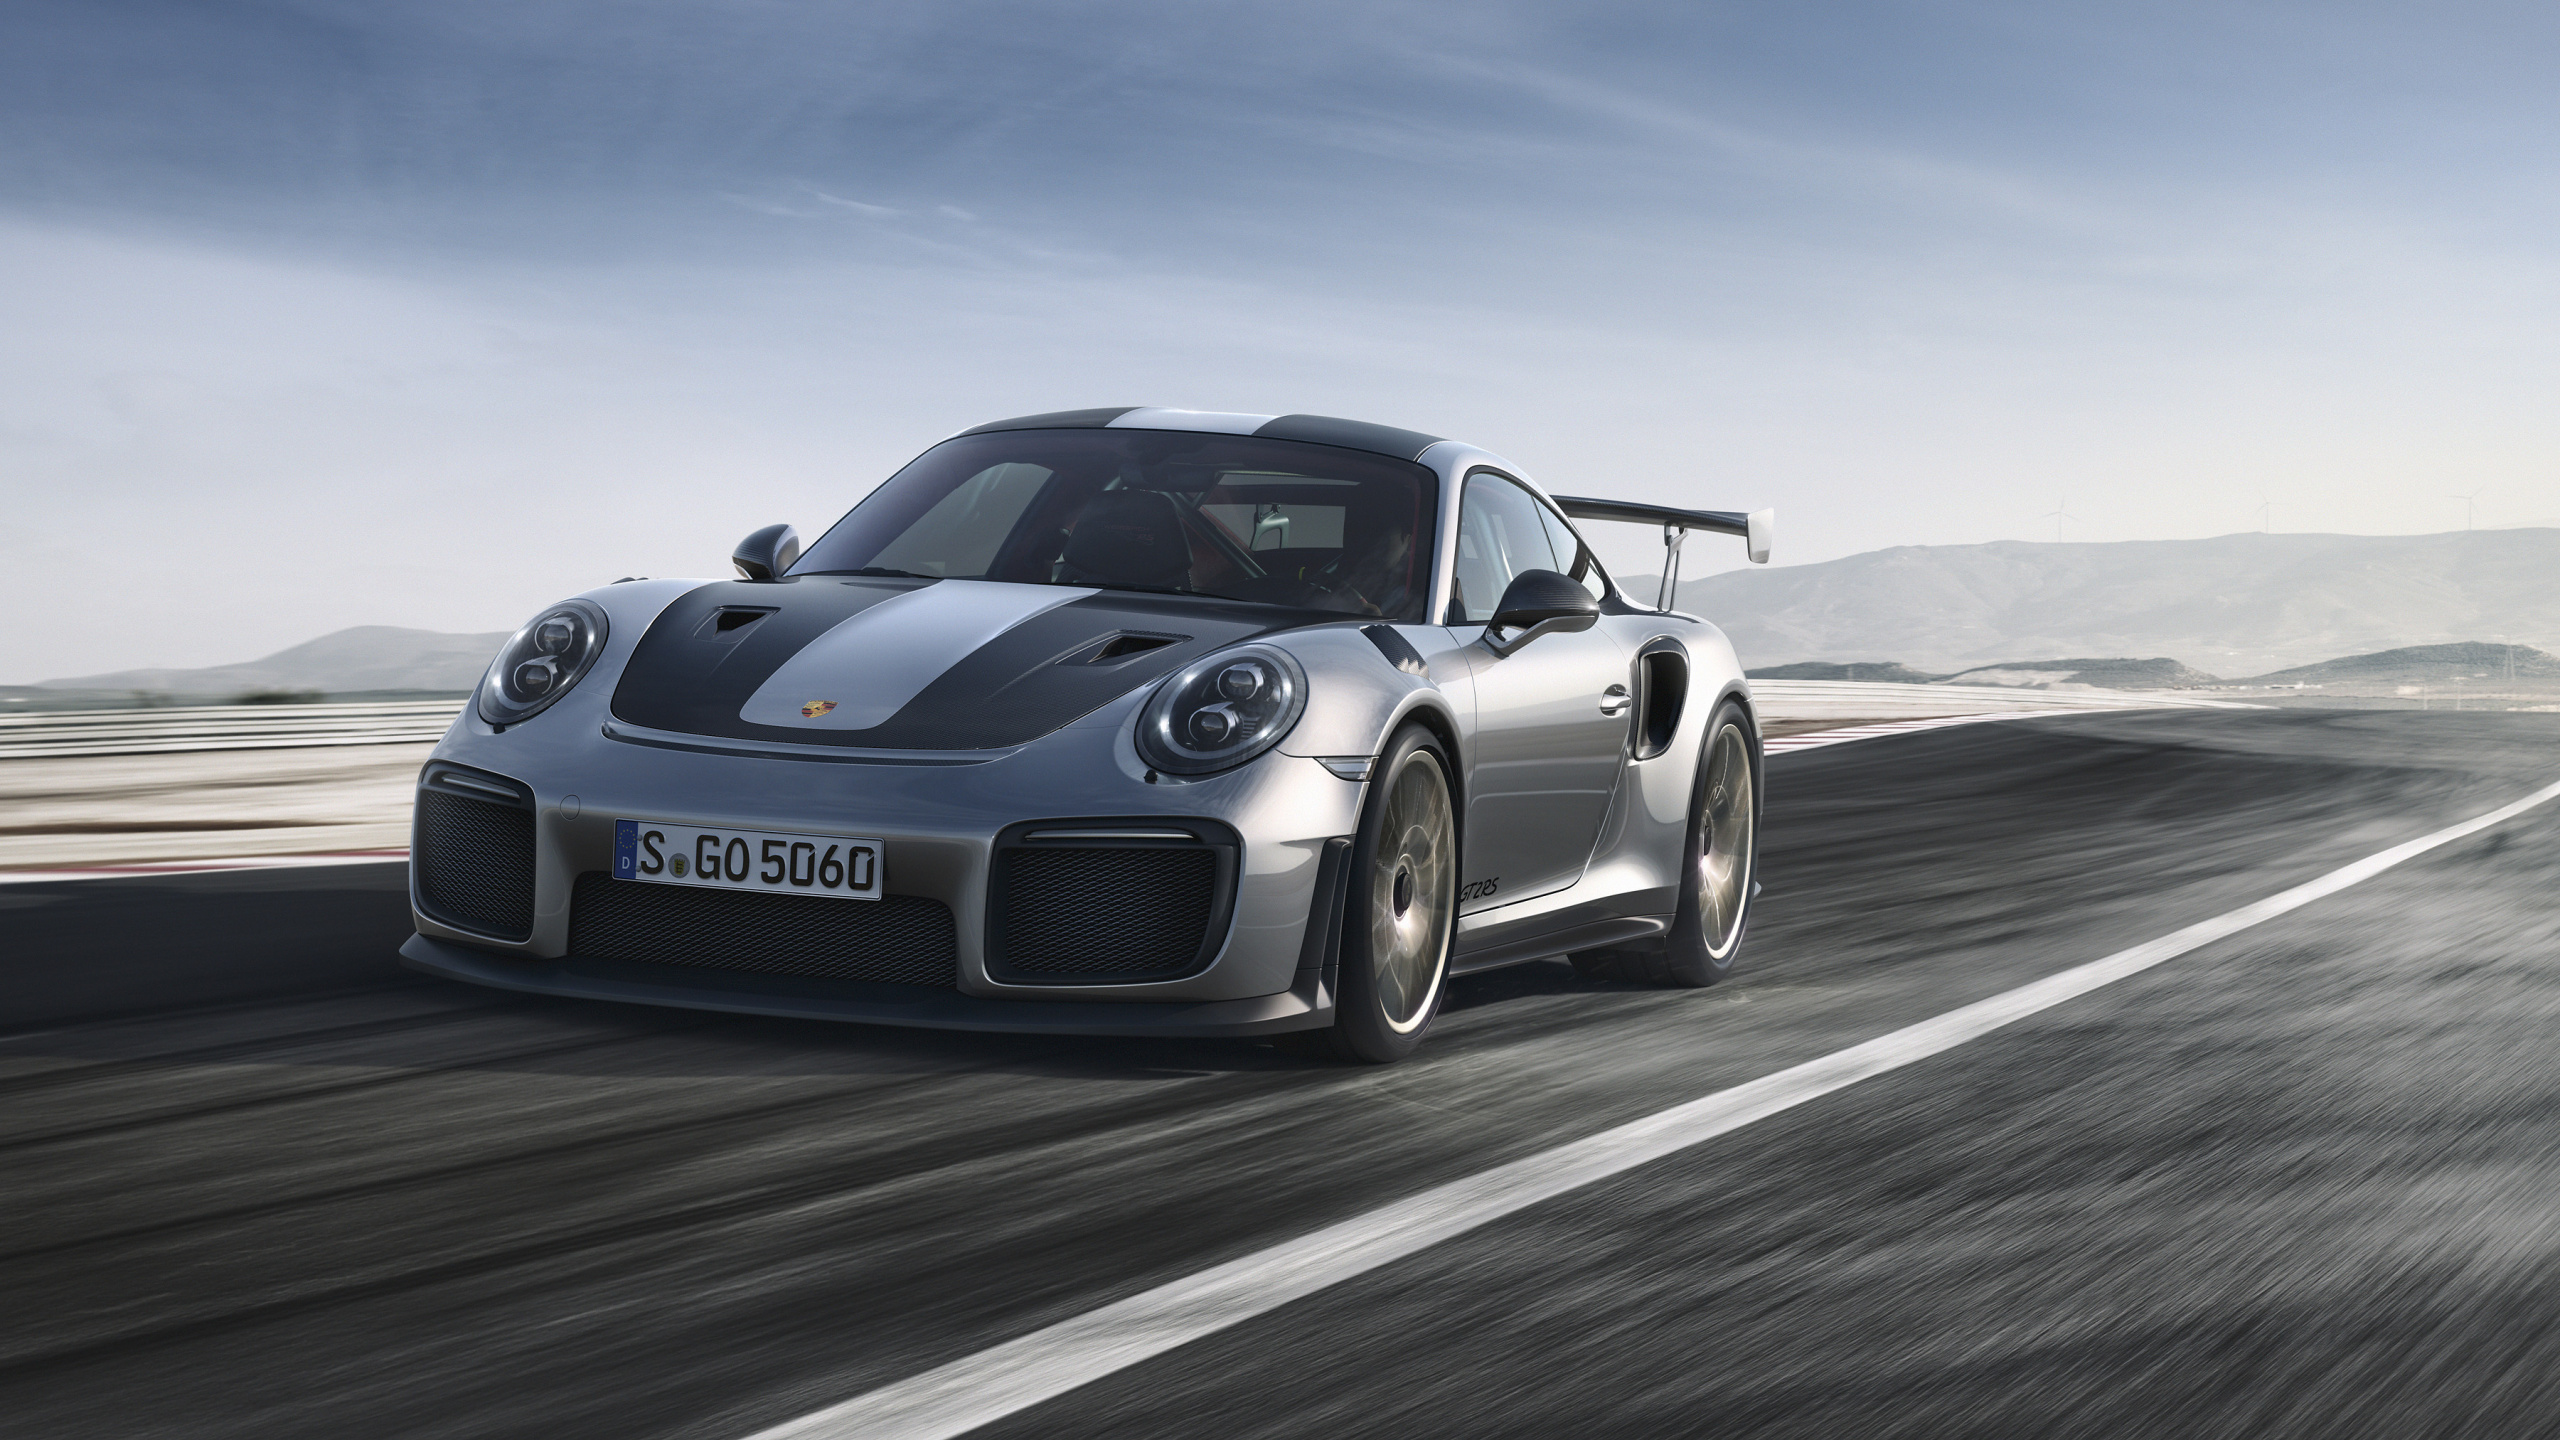 Porsche 911 Noire Sur Route. Wallpaper in 2560x1440 Resolution